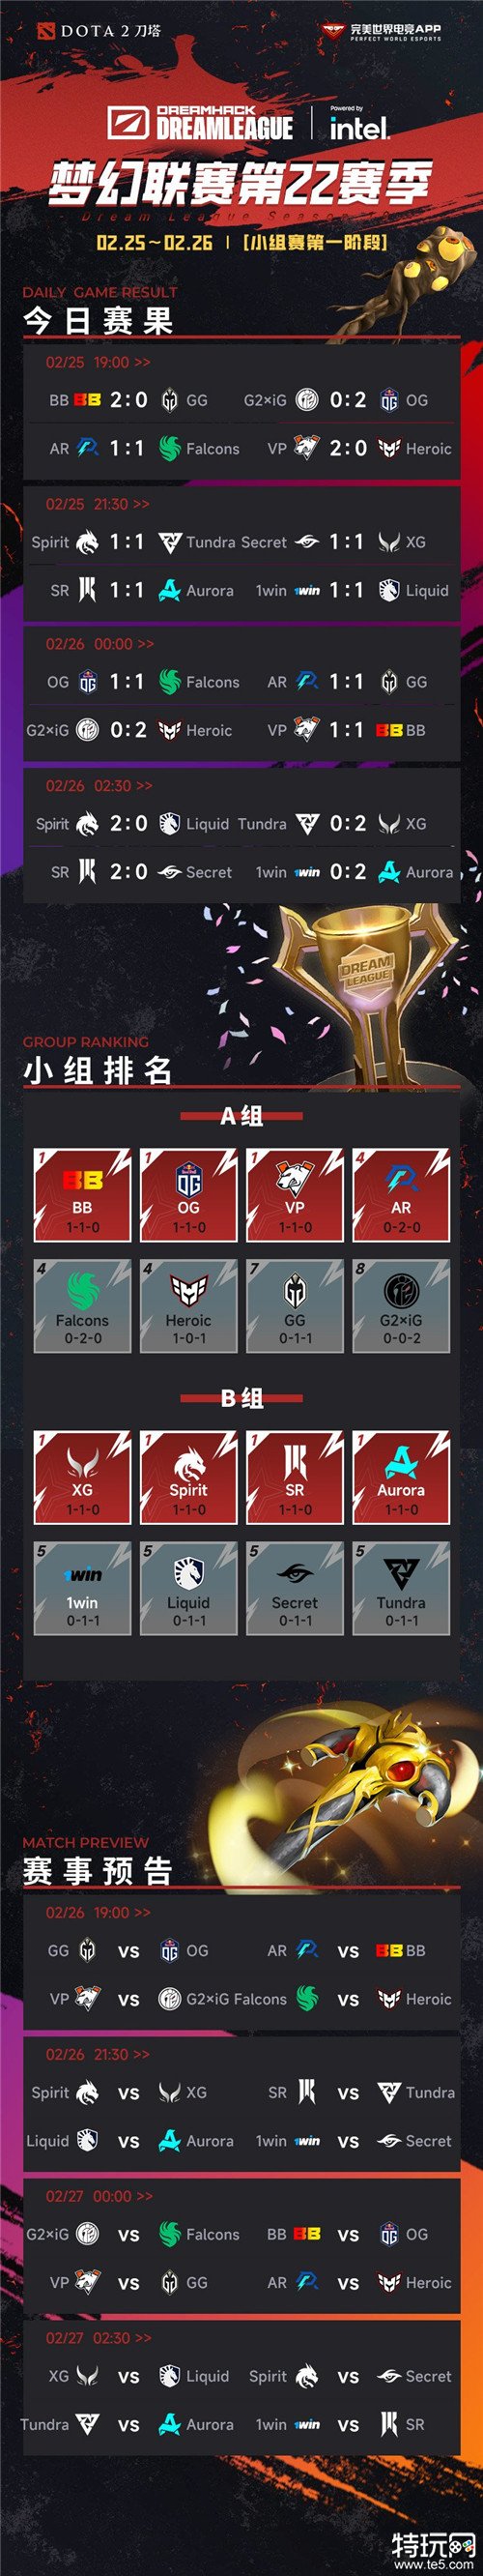 DOTA2梦幻联赛S22最新赛事信息 中国战队XG暂列B组第一